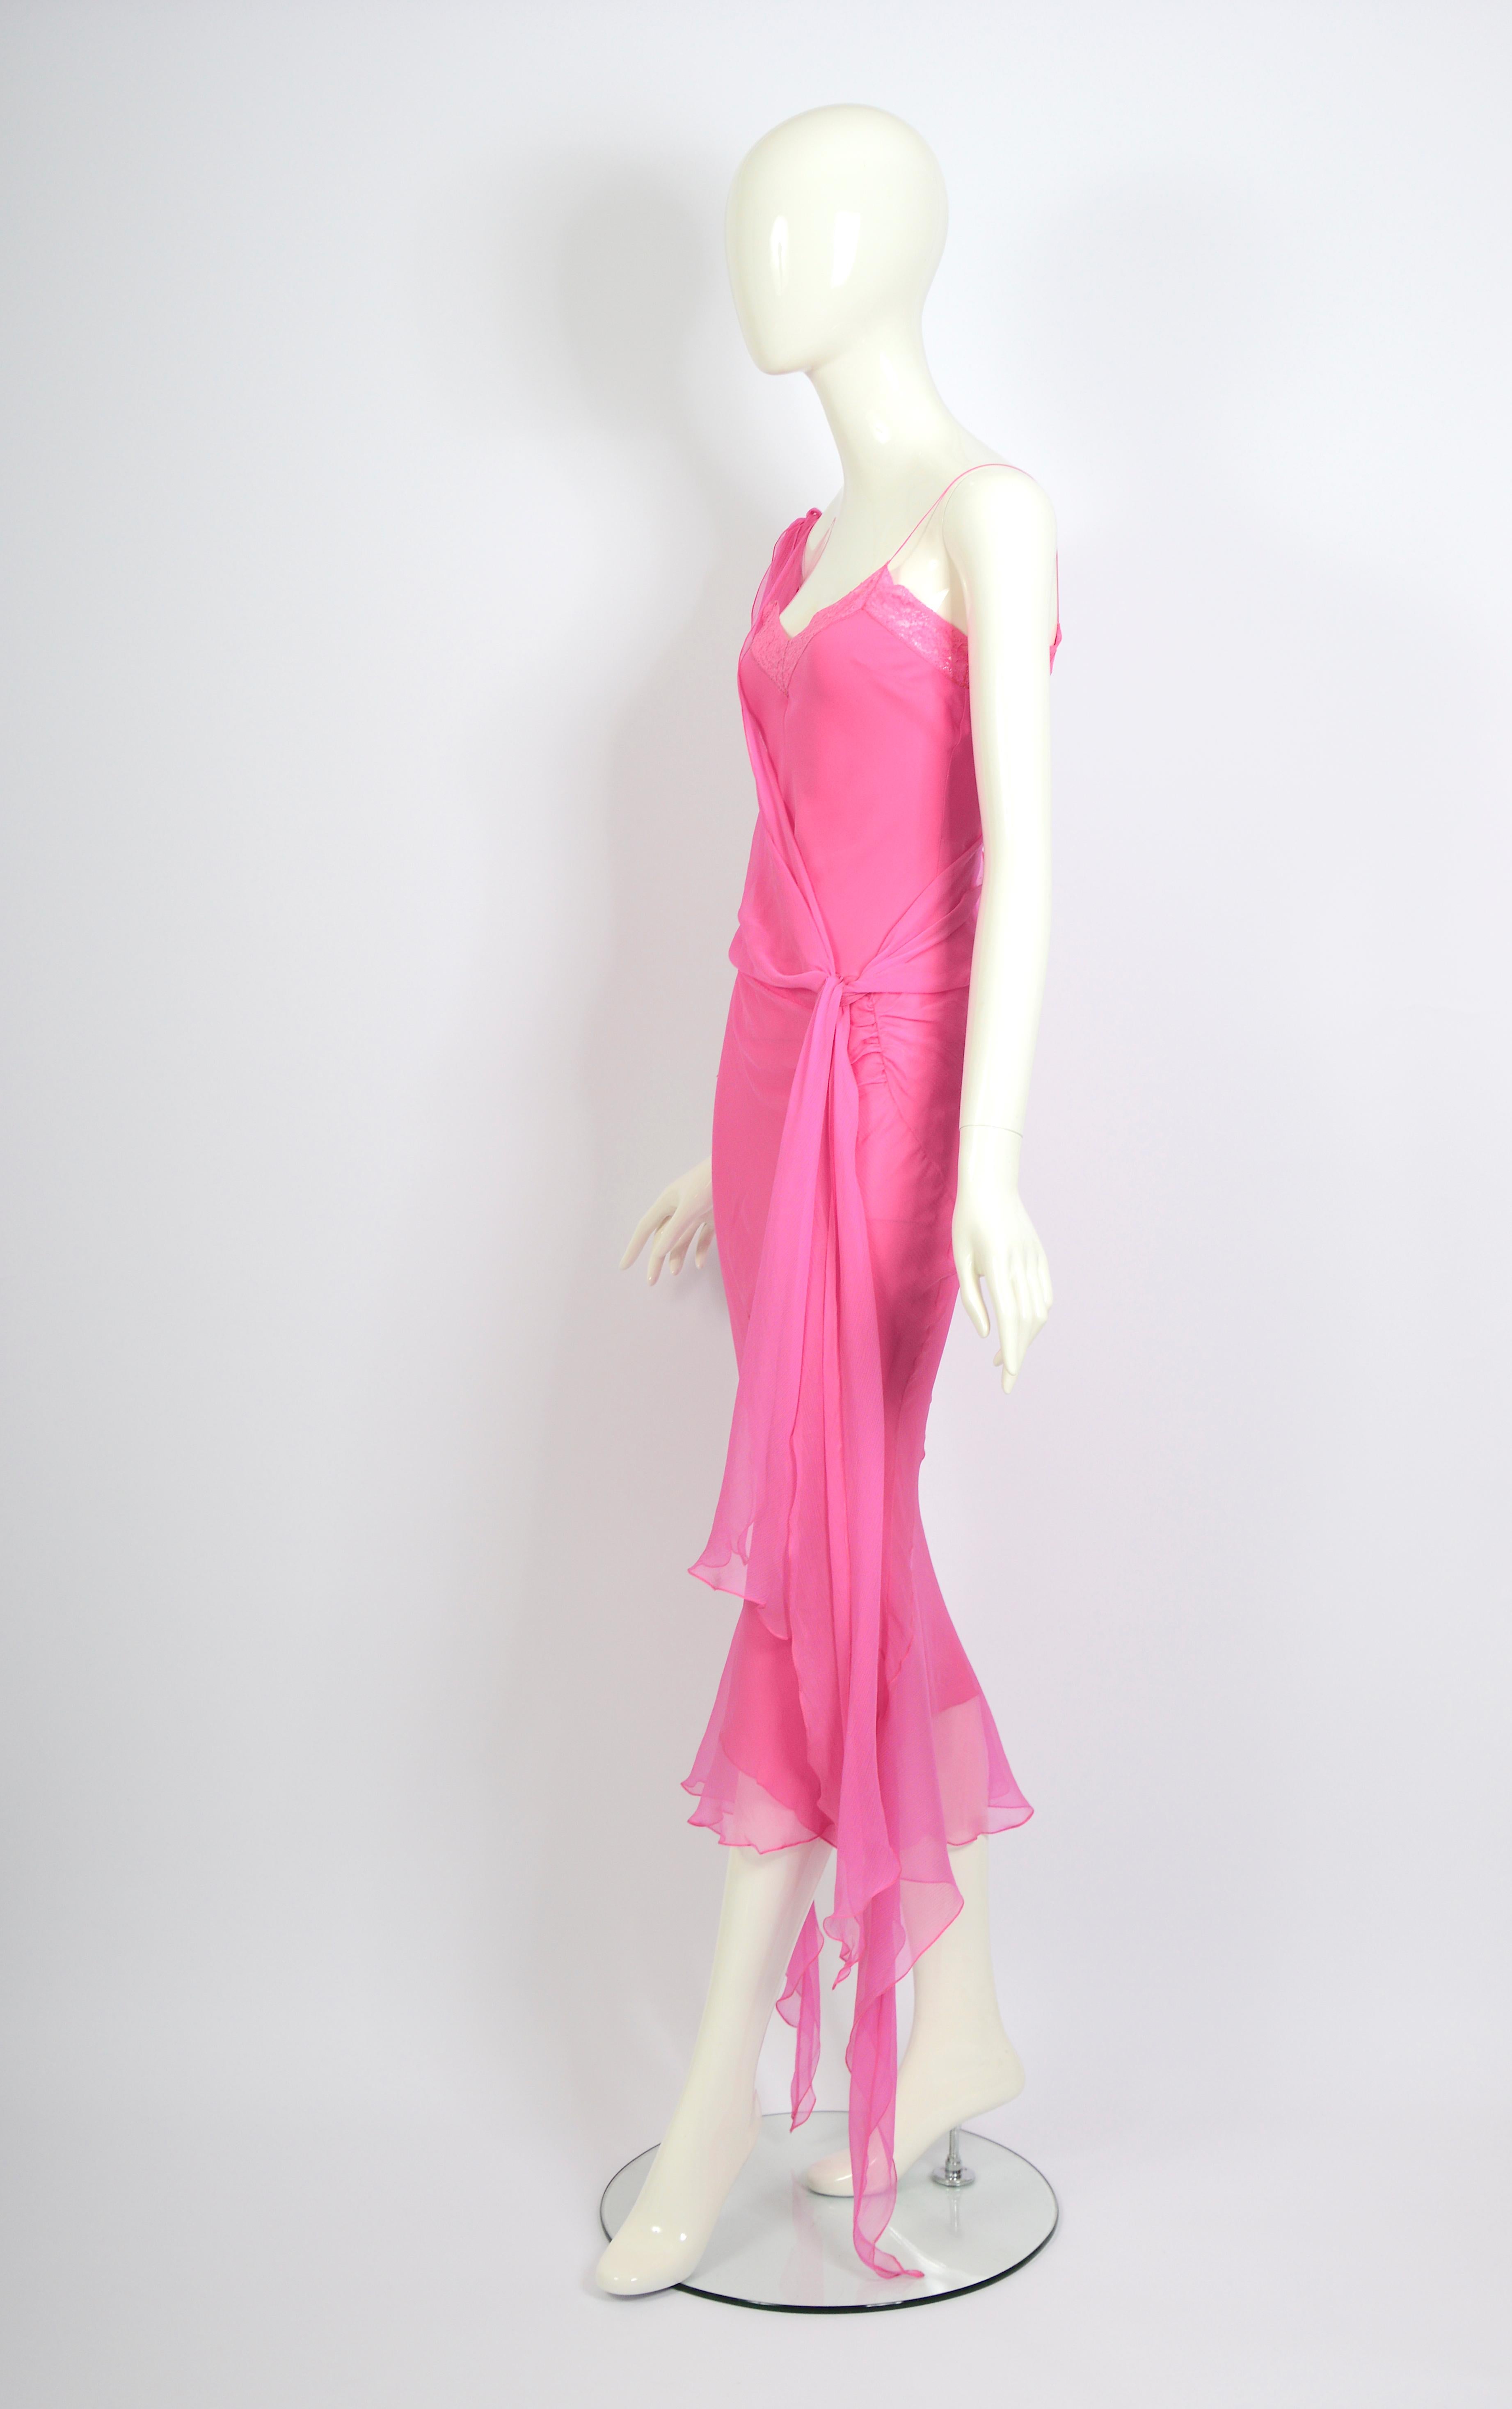 Vintage John Galliano Frühjahr Sommer 2004 doppellagiges rosa Seidenchiffon Abendkleid mit Spitzenbesatz.
Kleid aus Seidenchiffon mit seitlich geraffter Drapierung über einem Seidenslipkleid mit Spitzenbesatz
Schräg geschnittener